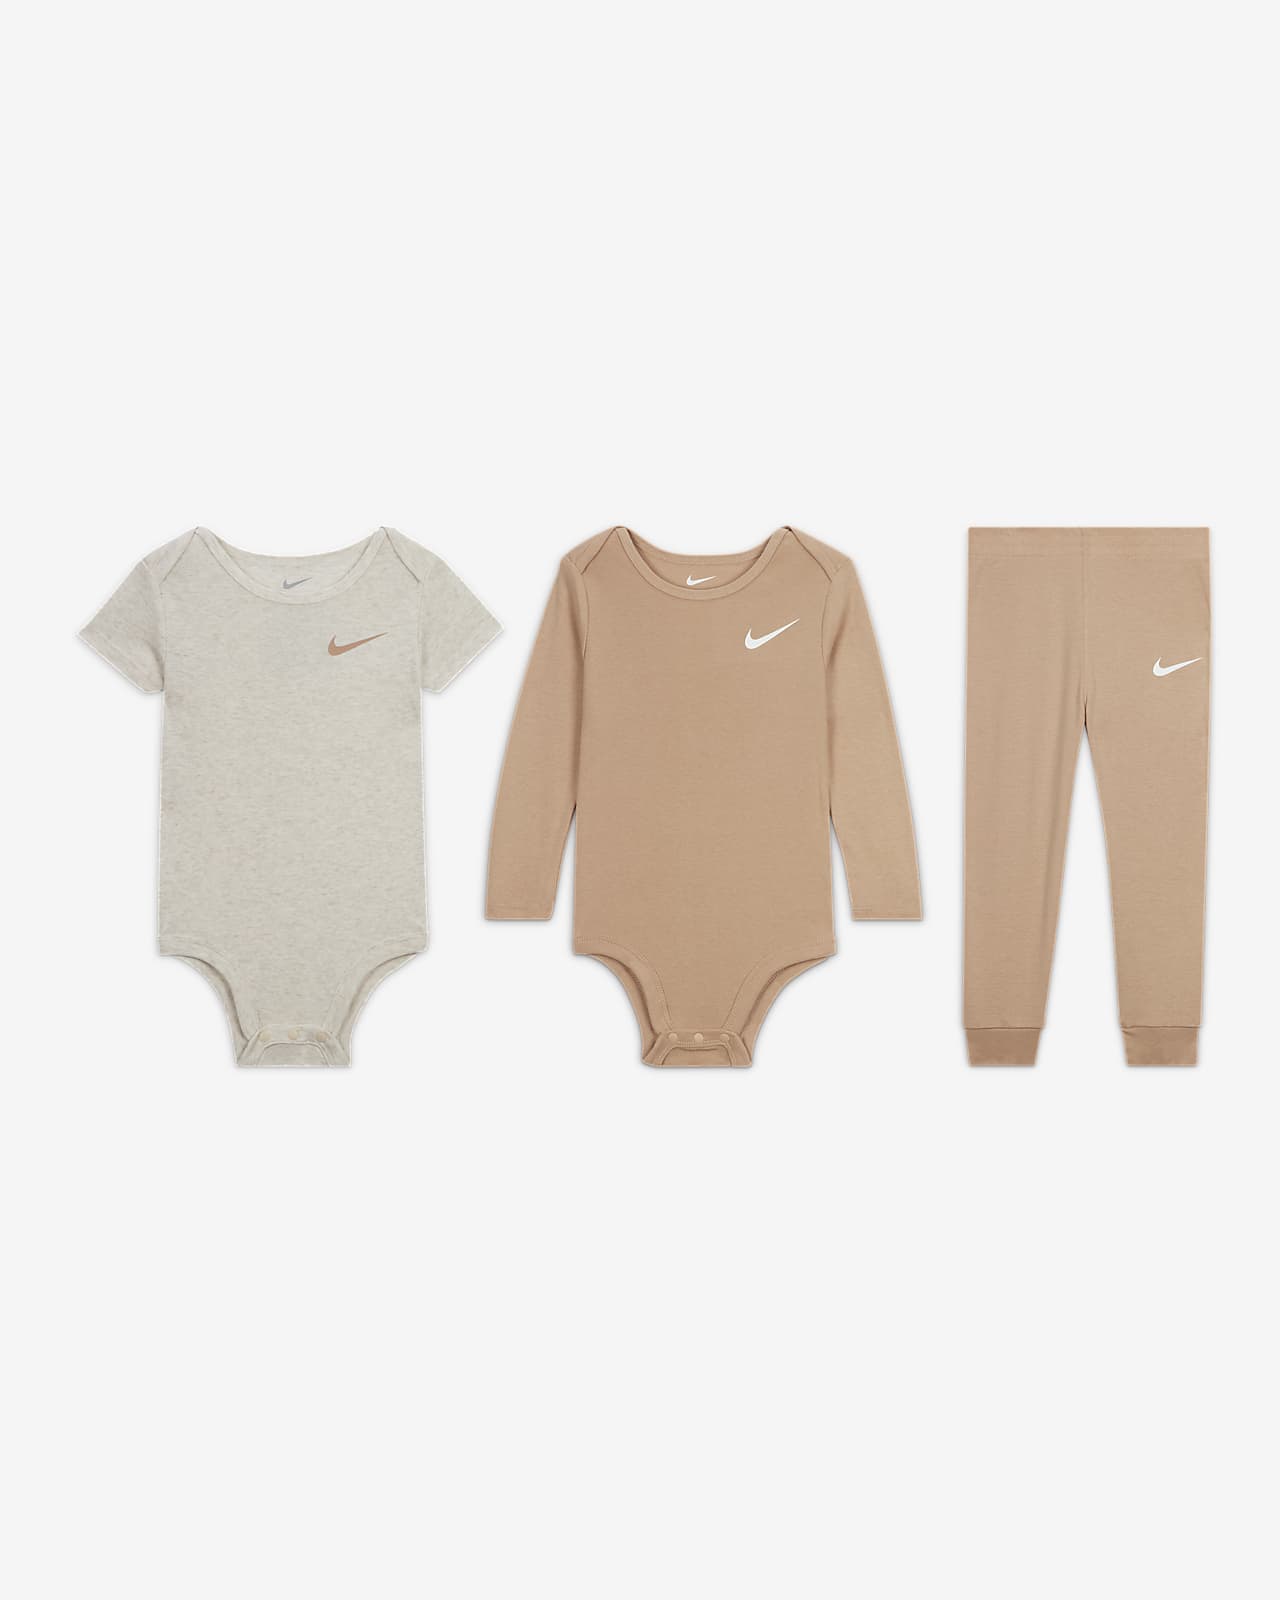 Nike Essentials Baby (12-24M) 3-Piece Bodysuit Set